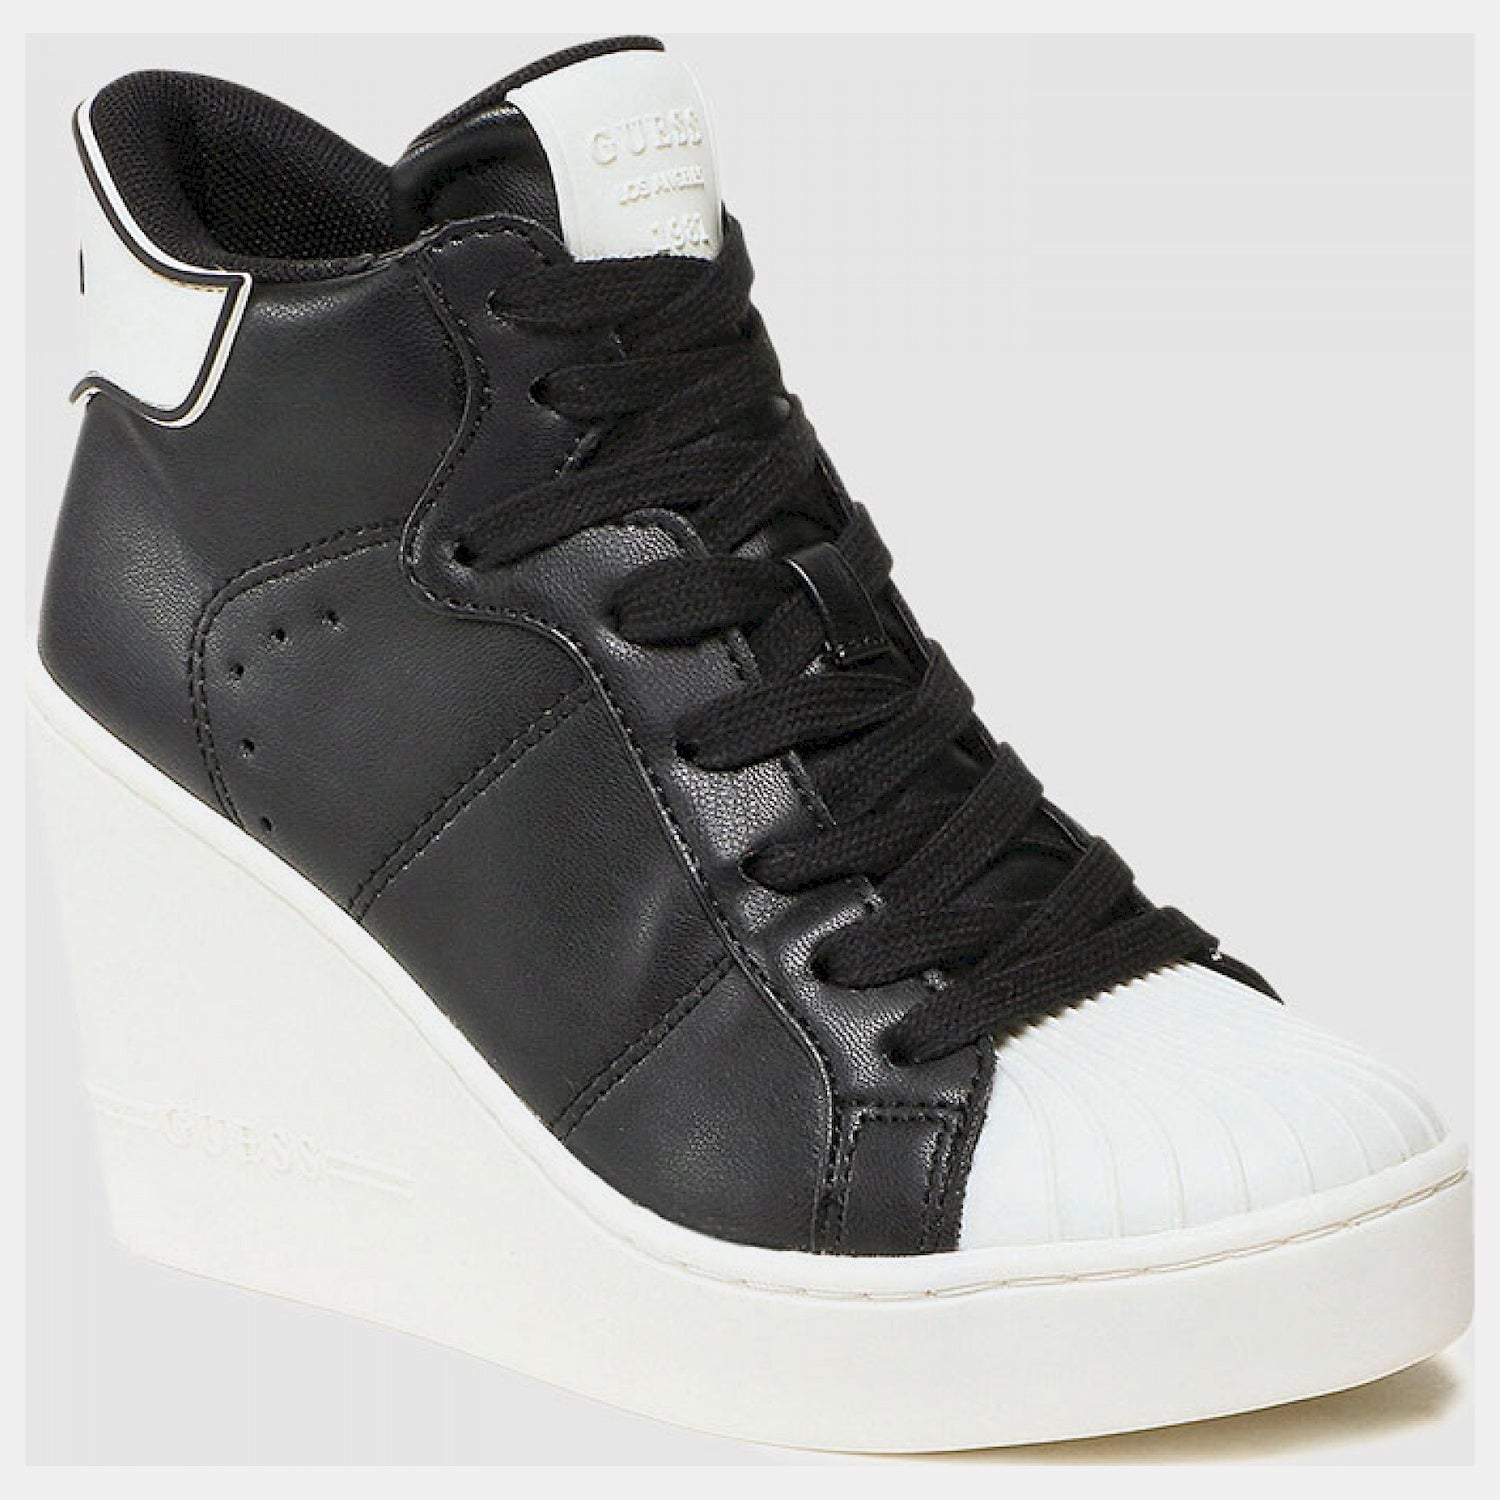 Guess Sapatilhas Bota Sneakers Boots Fl7antlea12 Black Preto_shot1